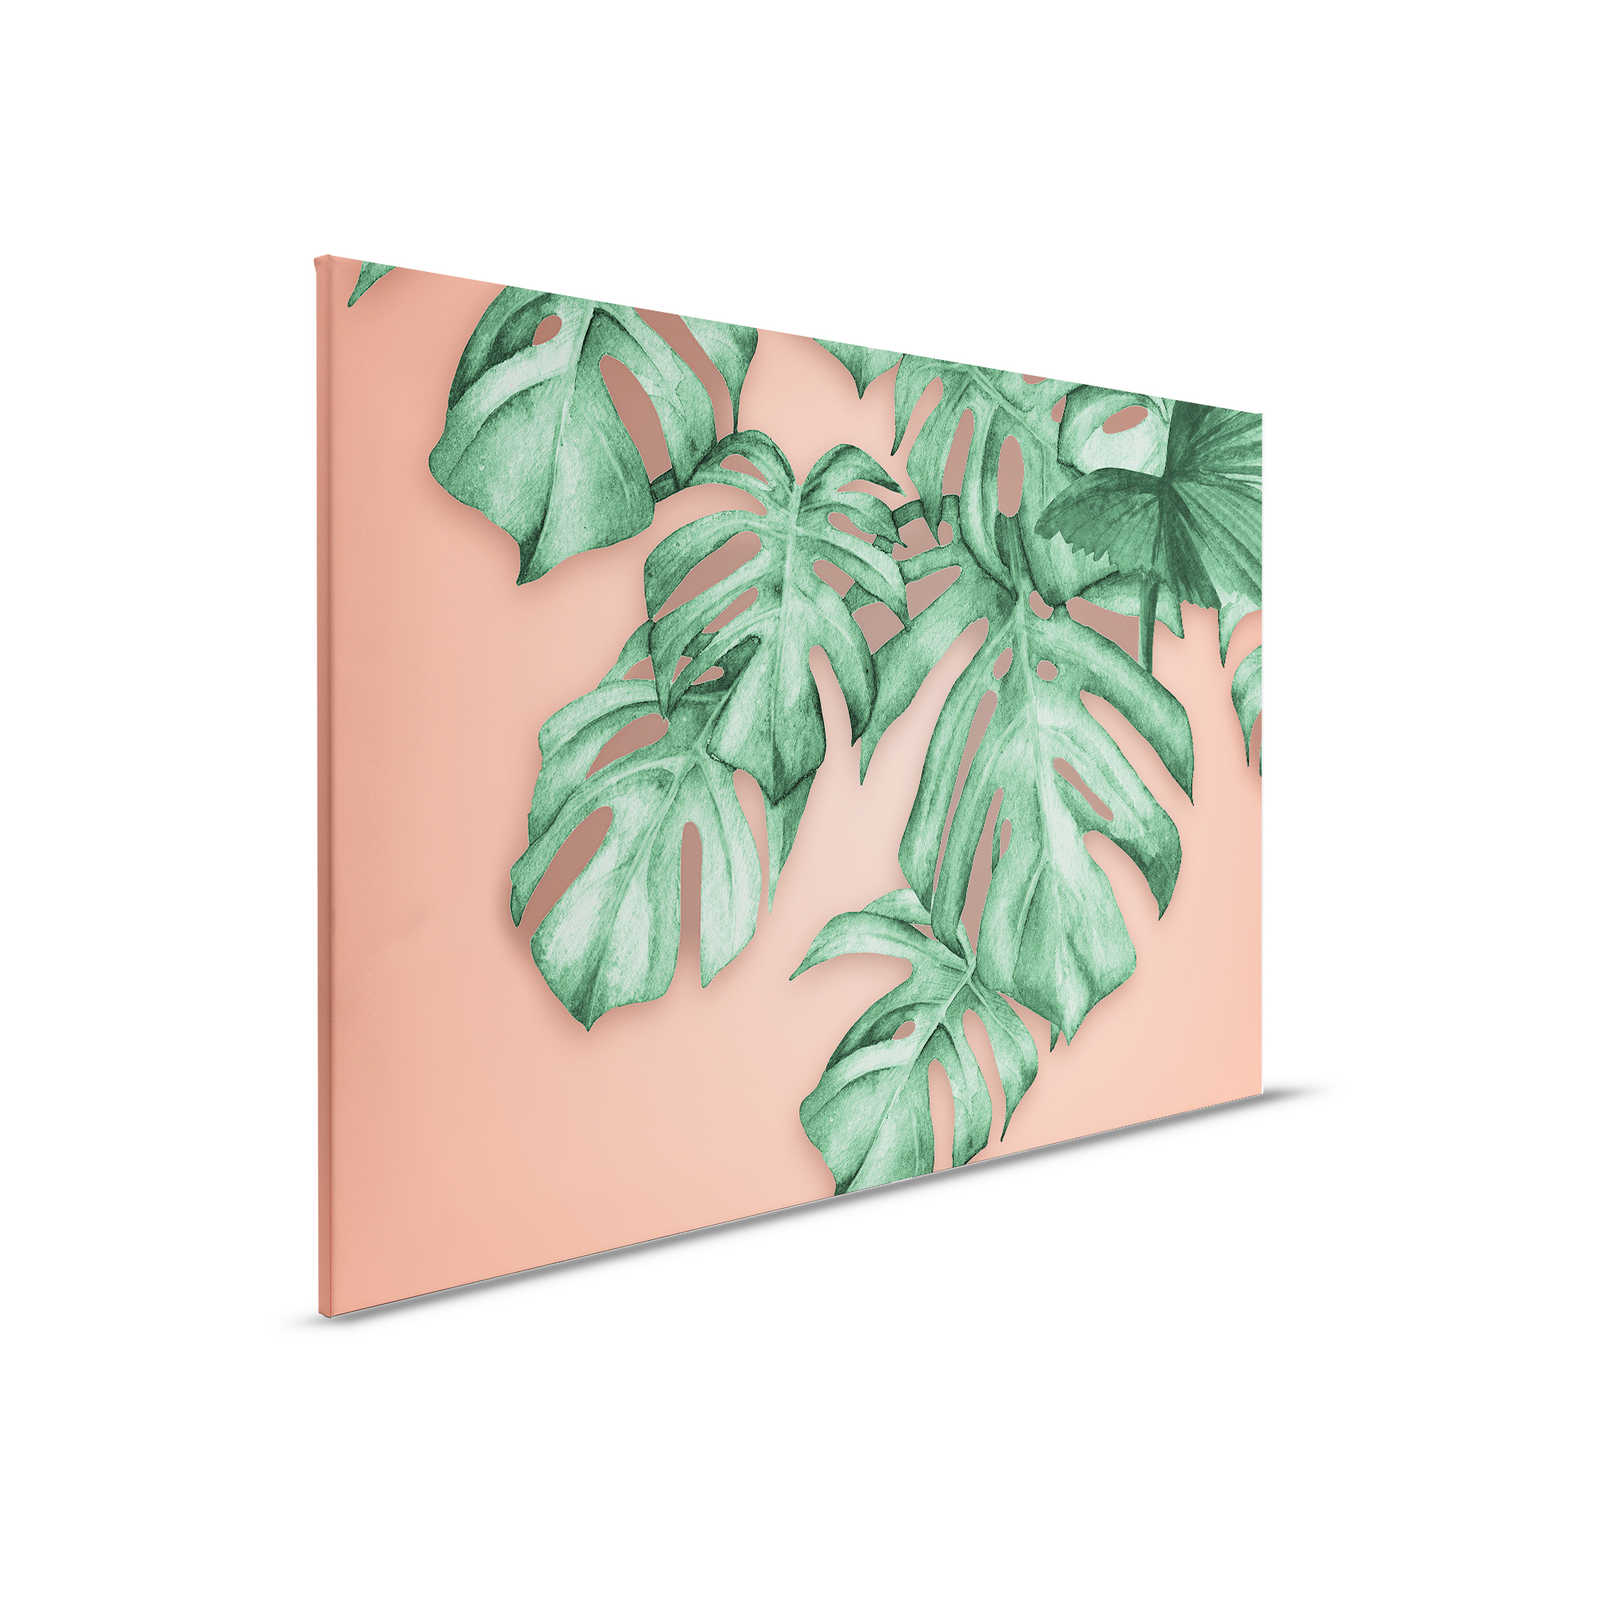 Quadro su tela con foglie di palma tropicali - 0,90 m x 0,60 m
